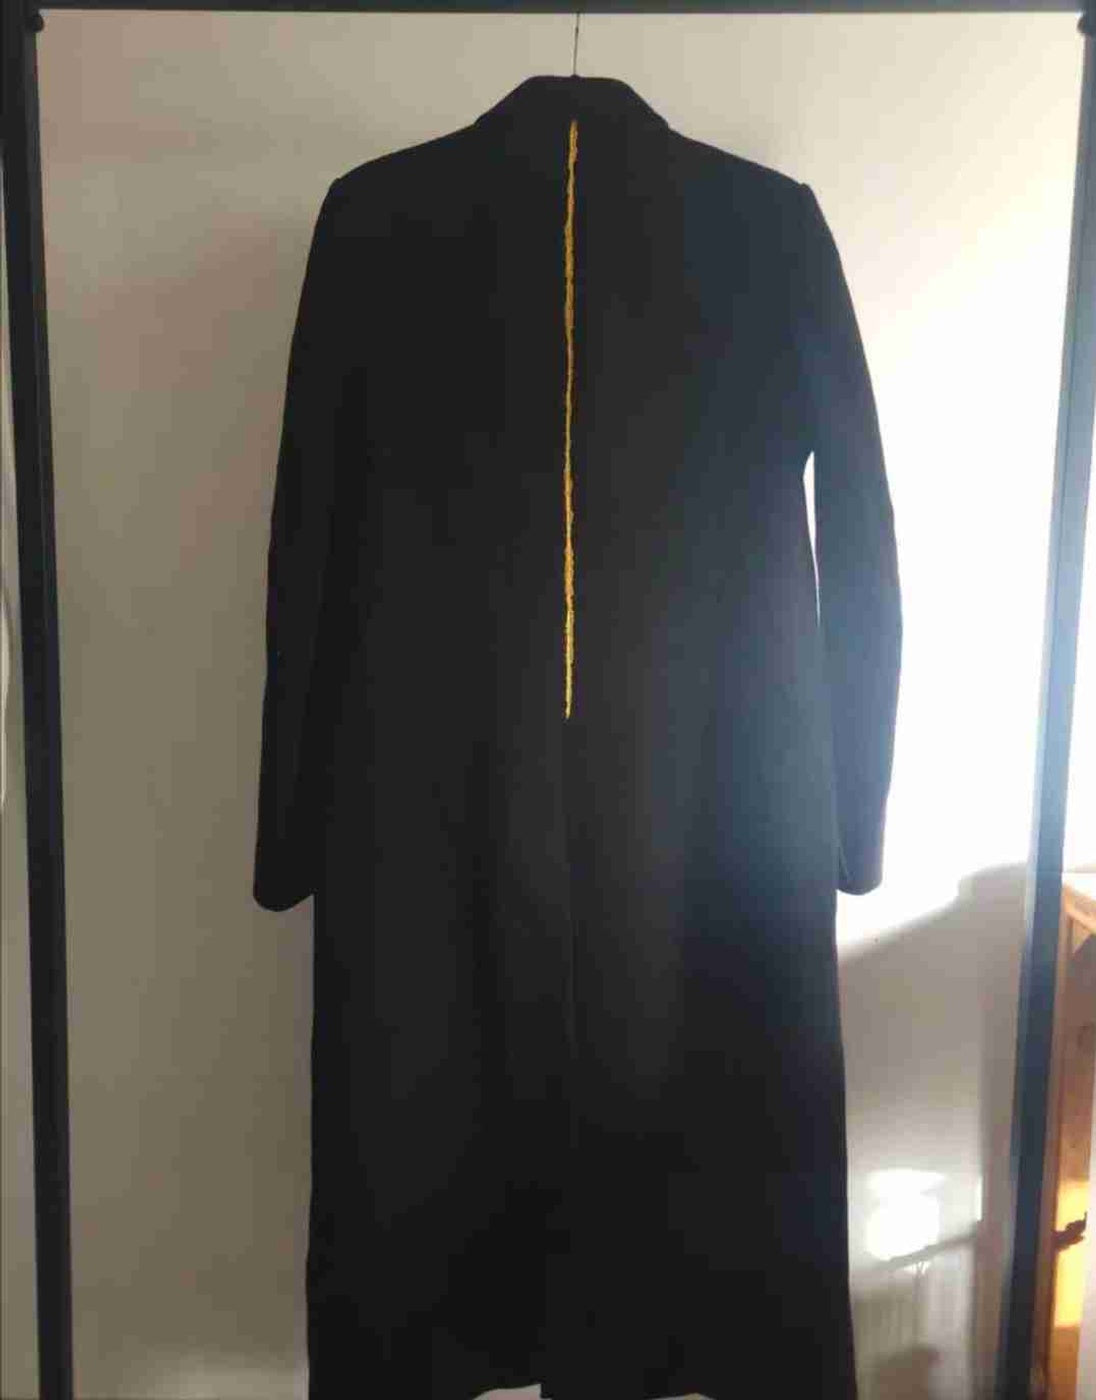 2017 woolen overcoat size 42